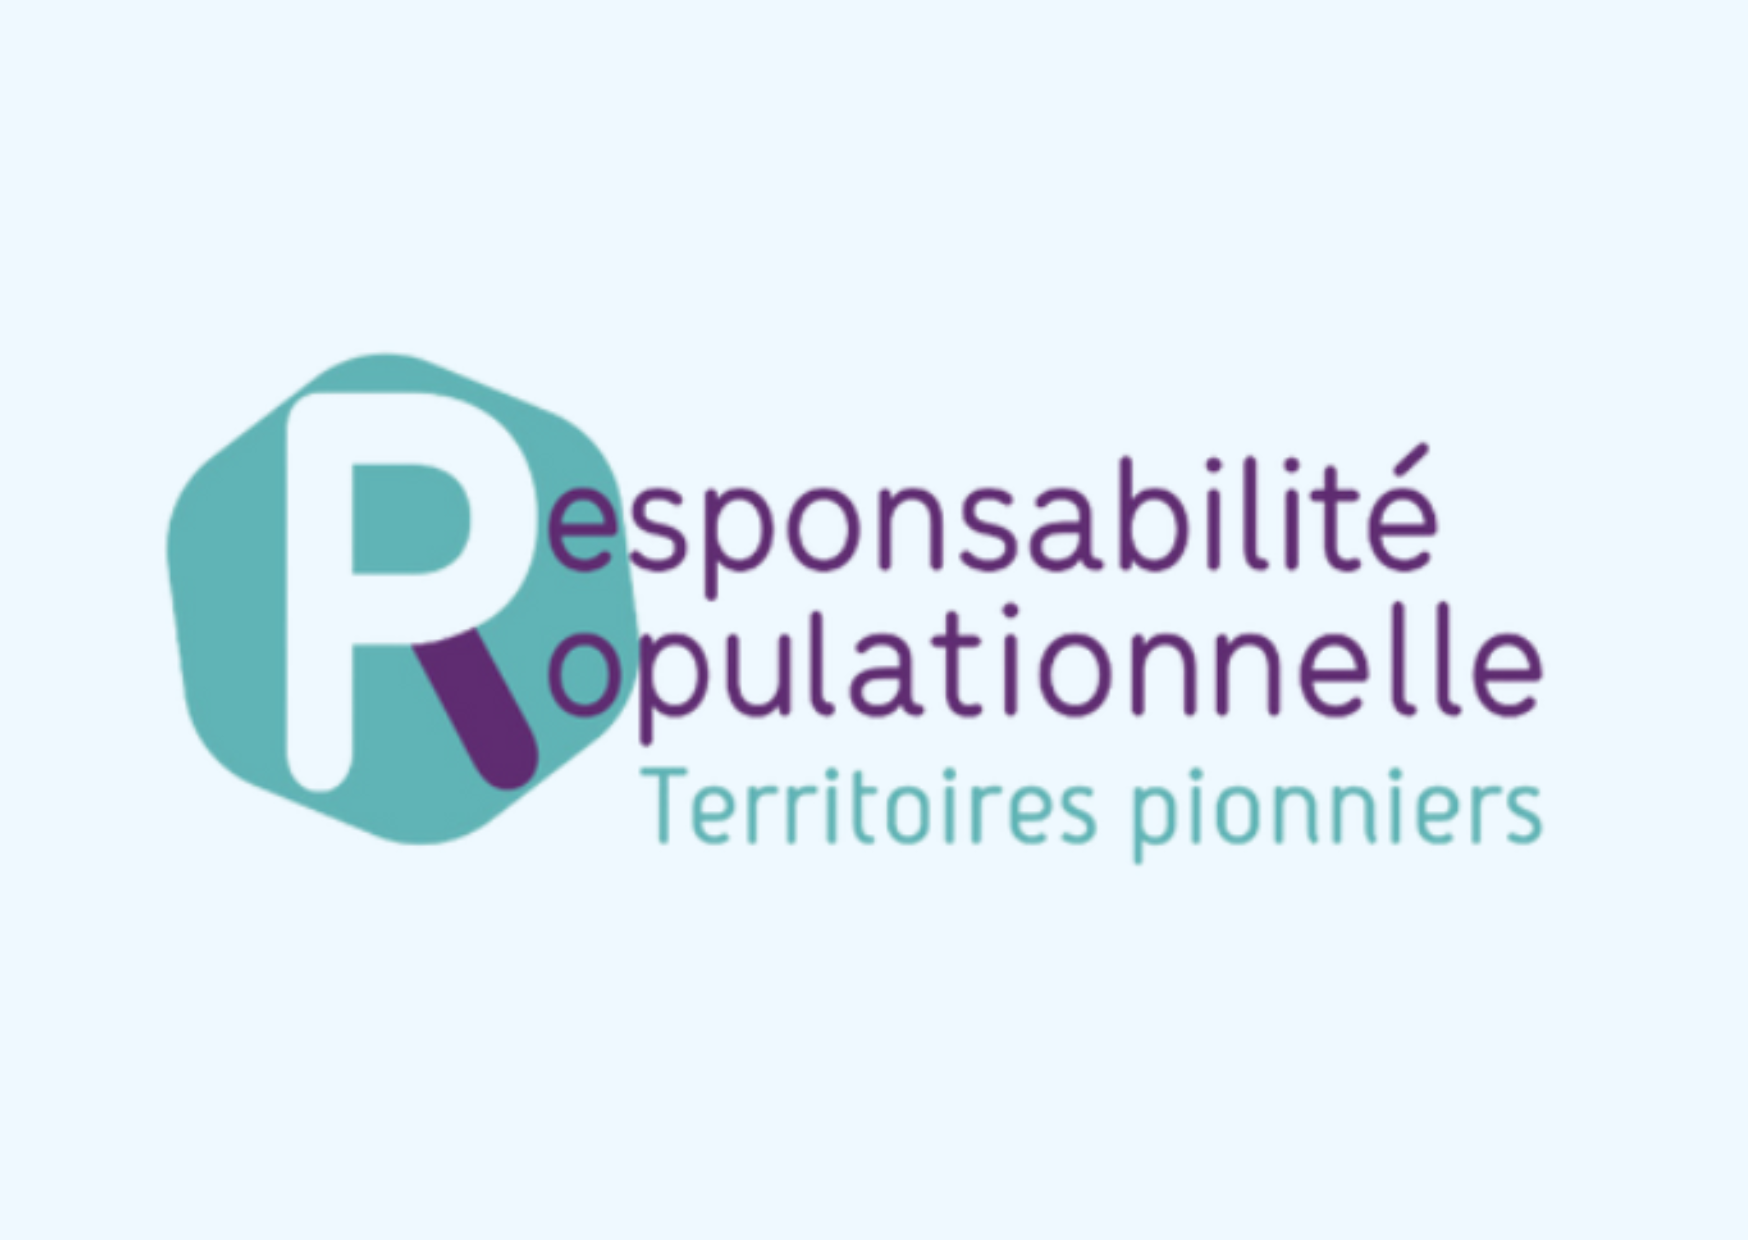 Responsabilité Populationnelle : PACA, 7ème territoire pionnier - Fédération Hospitalière de France, Région PACA